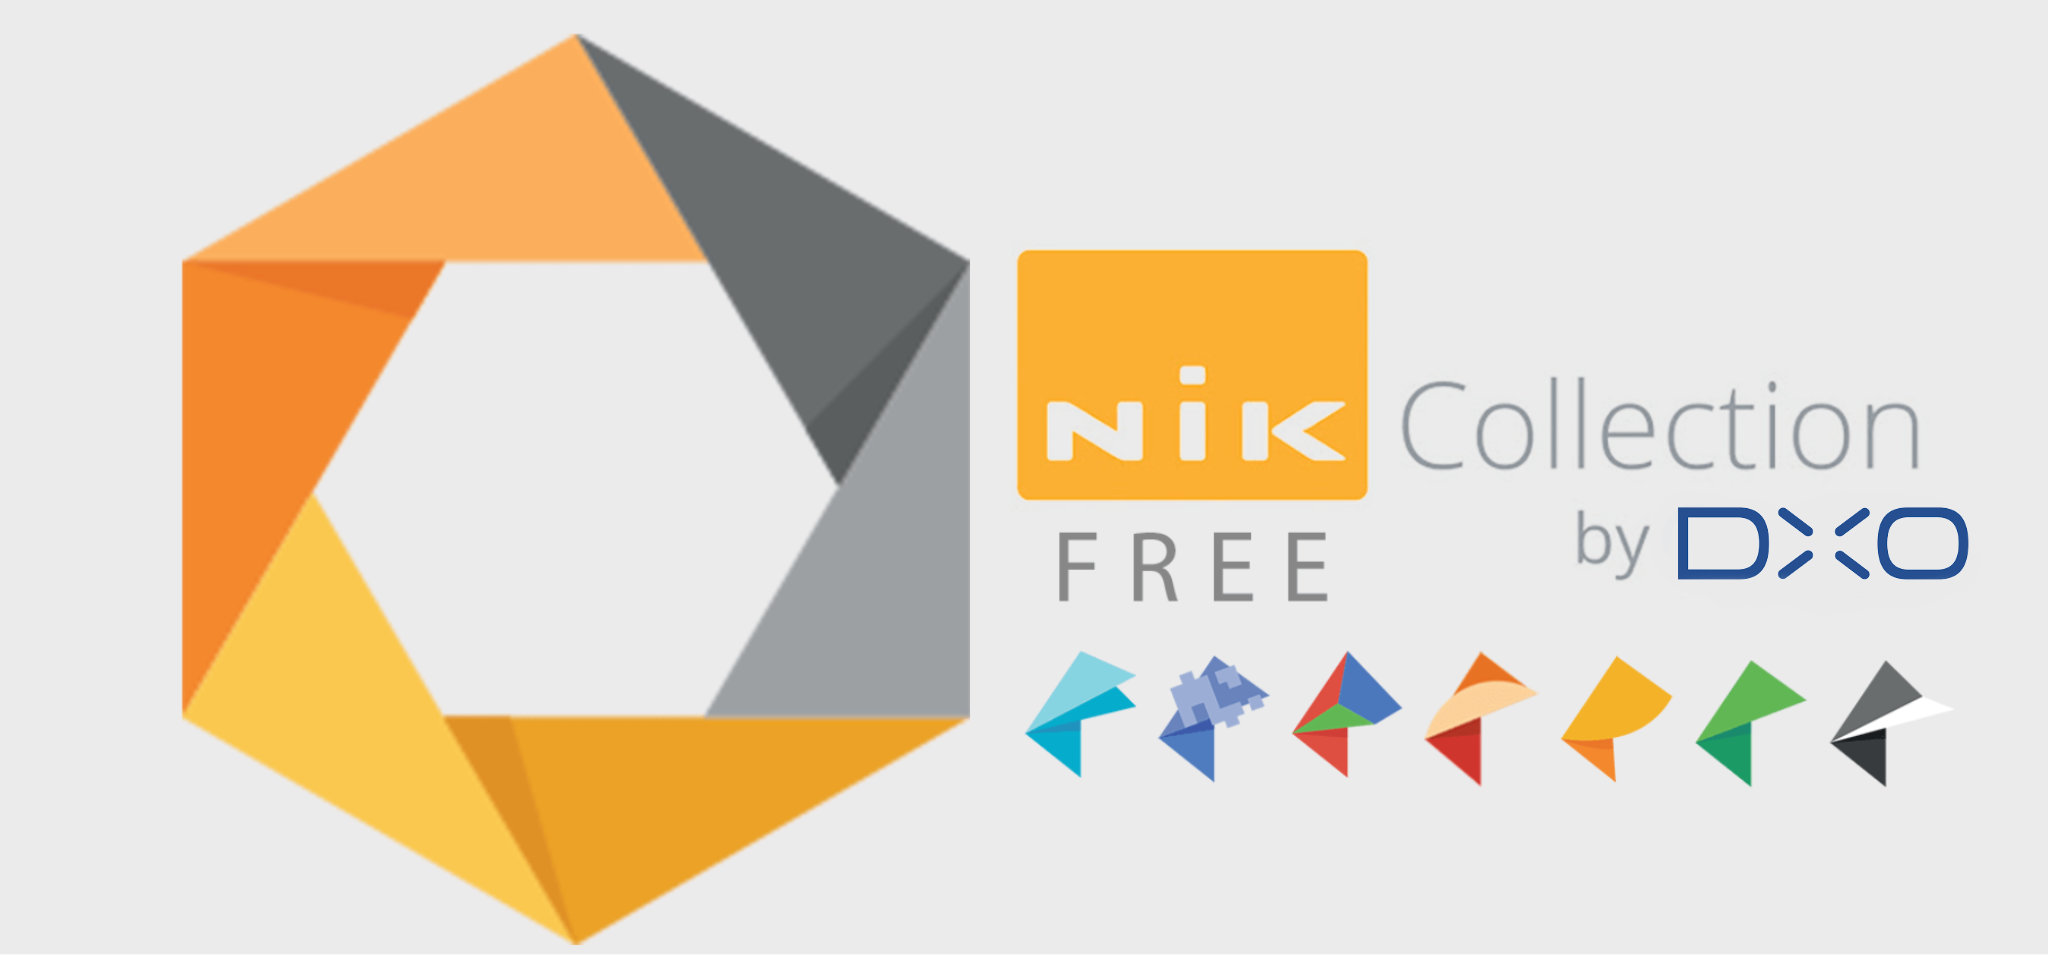 DxO bất ngờ mua lại Nik Collection từ tay Google, tiếp tục phát triển và phát hành miễn phí